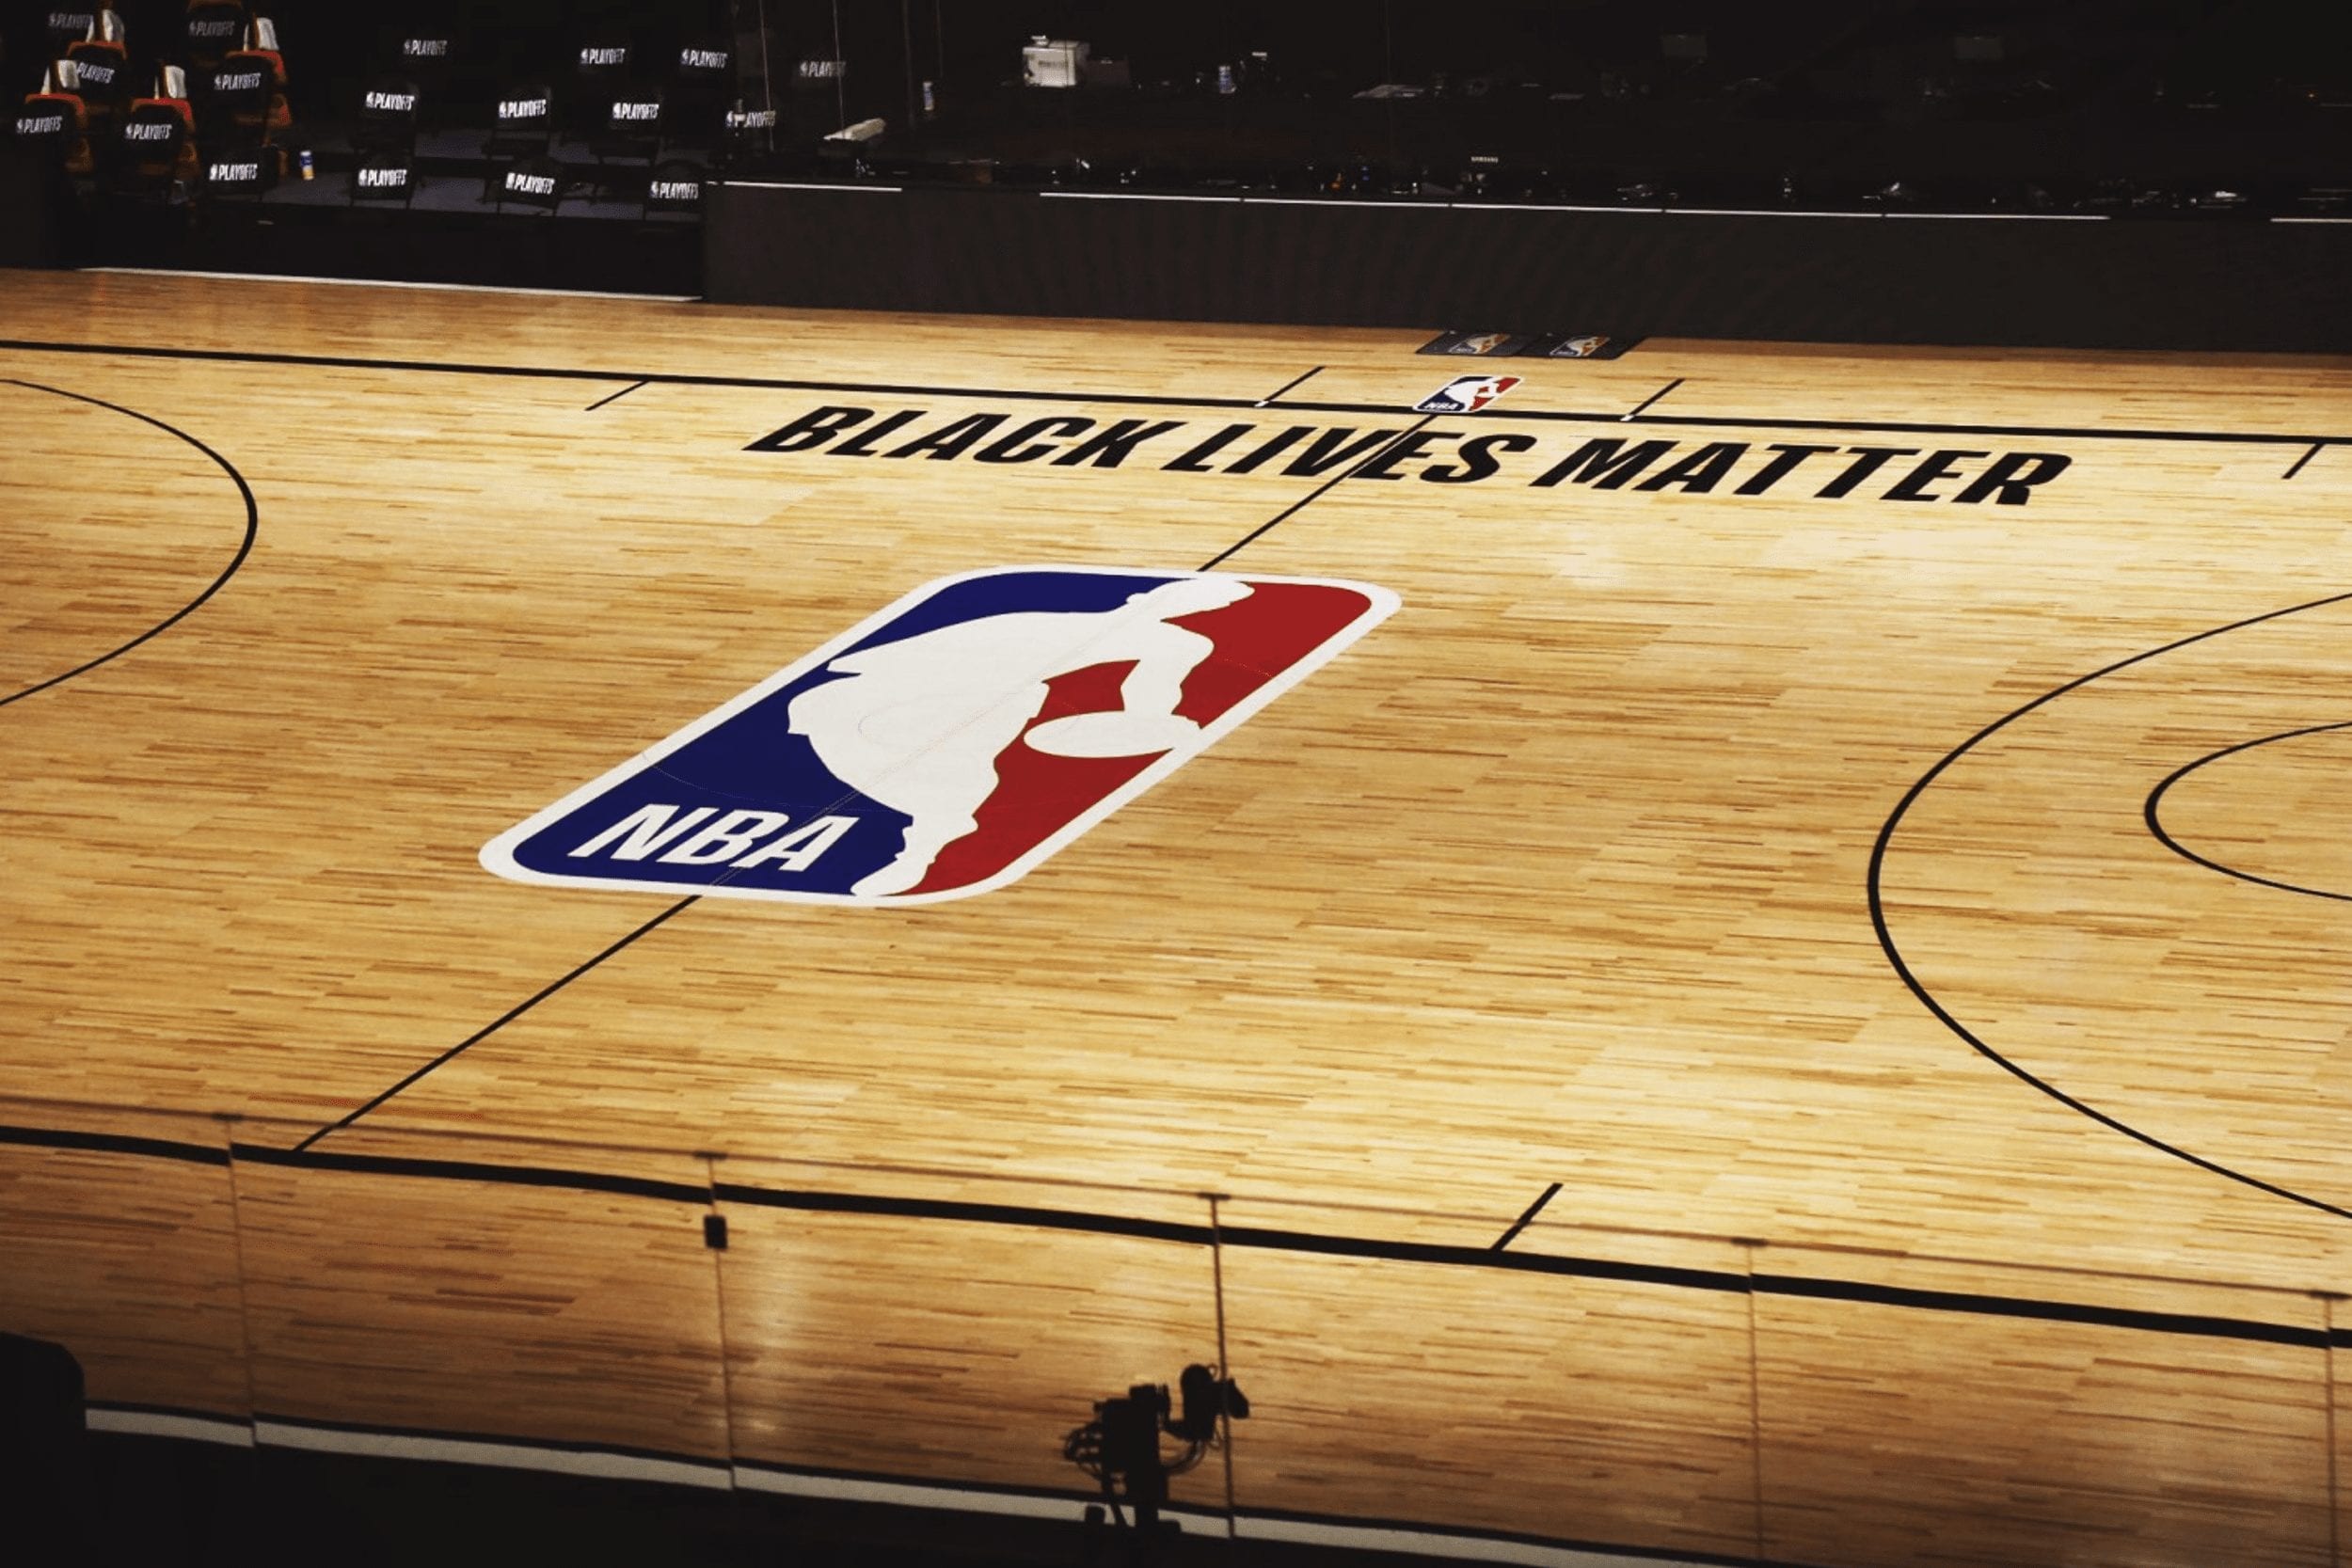 Sciopero NBA: quando lo sport si ferma contro il razzismo. Una sconfitta o una vittoria?